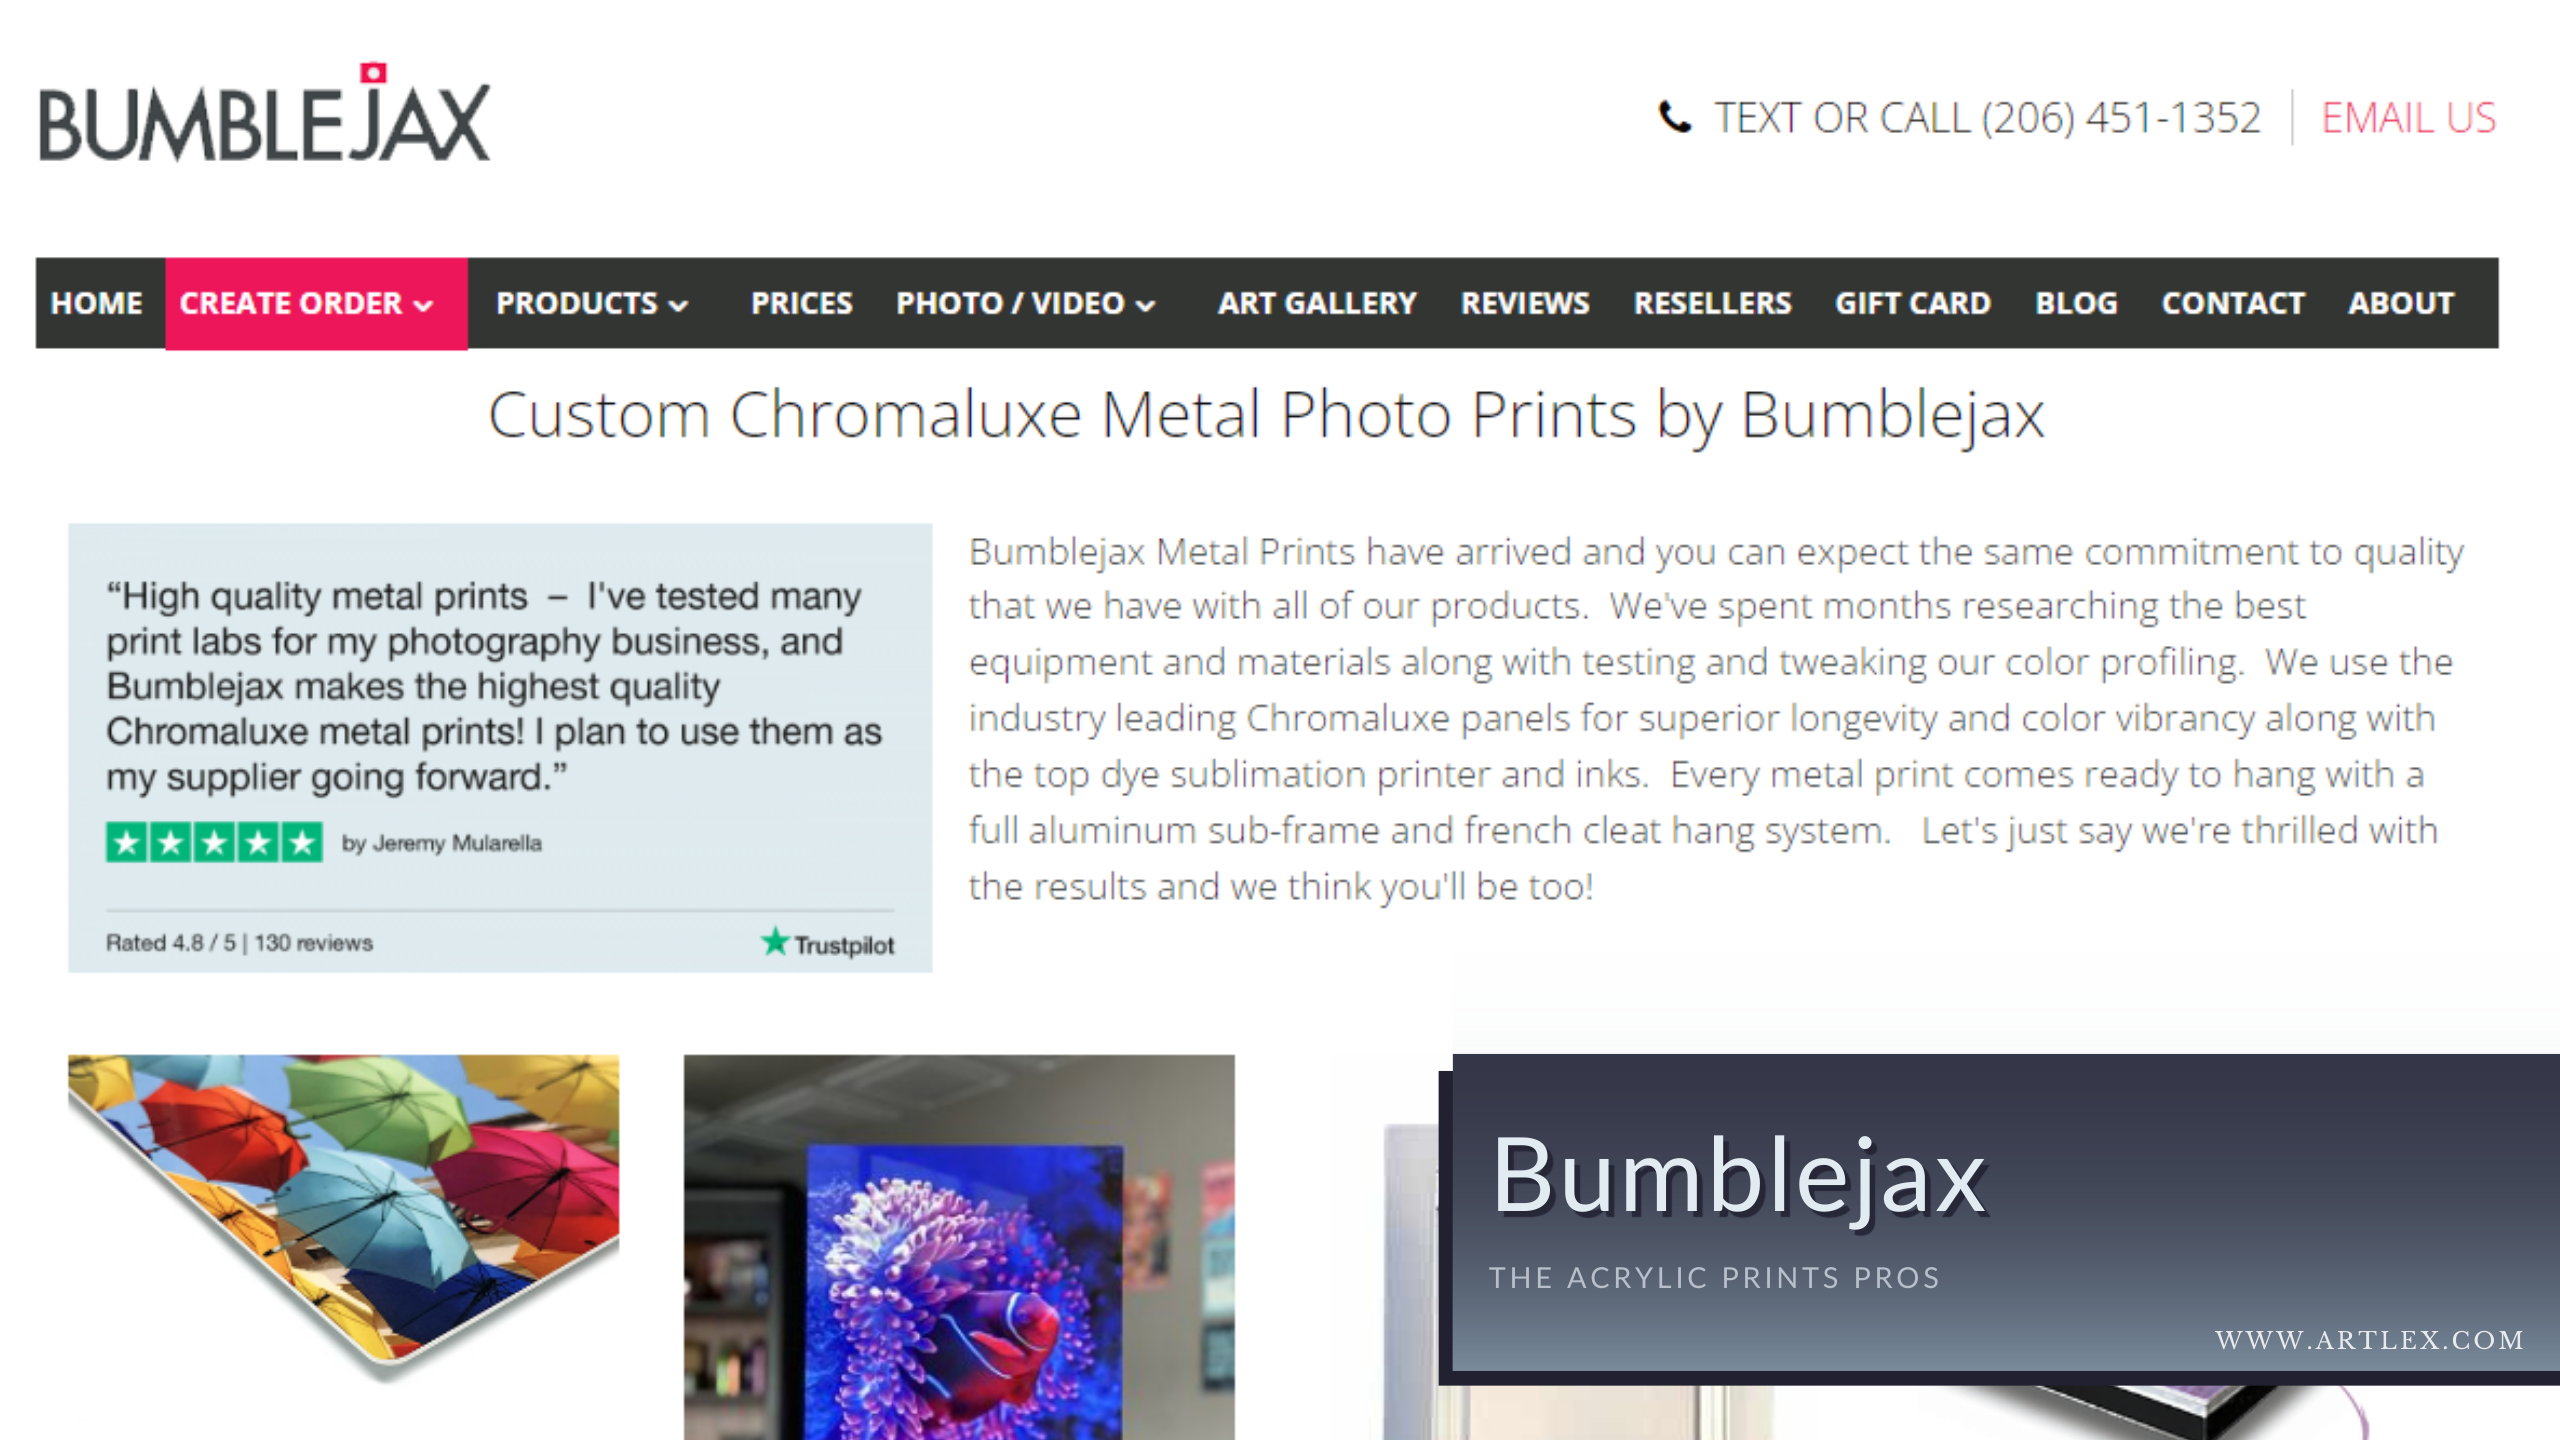 BumbleJax Aluminum Prints